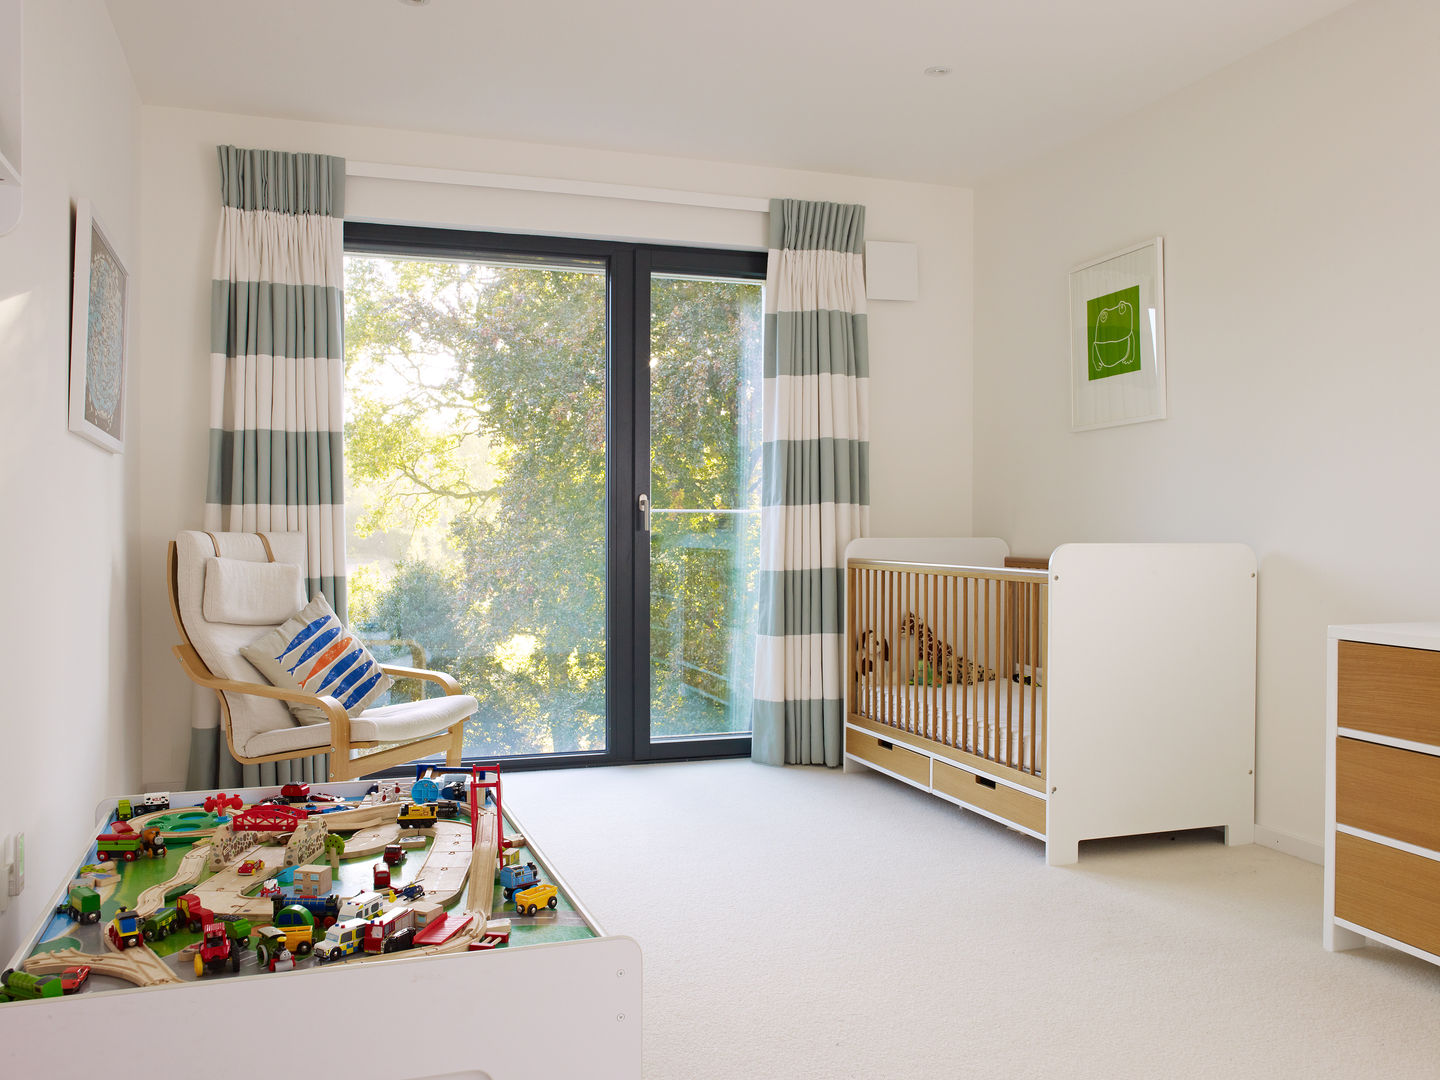 Luxus-Designhaus in England , Bau-Fritz GmbH & Co. KG Bau-Fritz GmbH & Co. KG Modern Kid's Room Beds & cribs